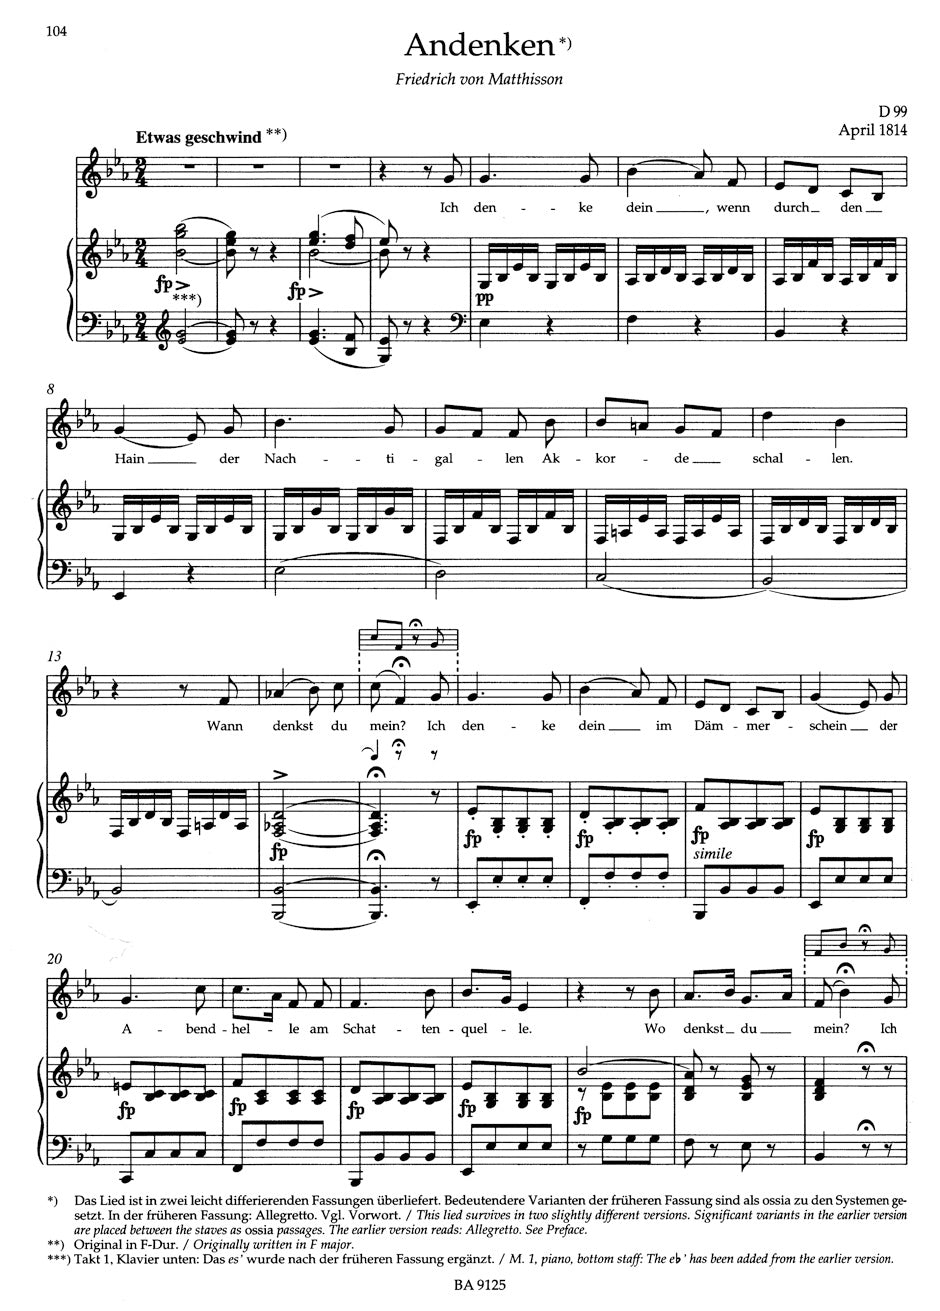 Schubert Lieder, Volume 5 (Medium Voice)